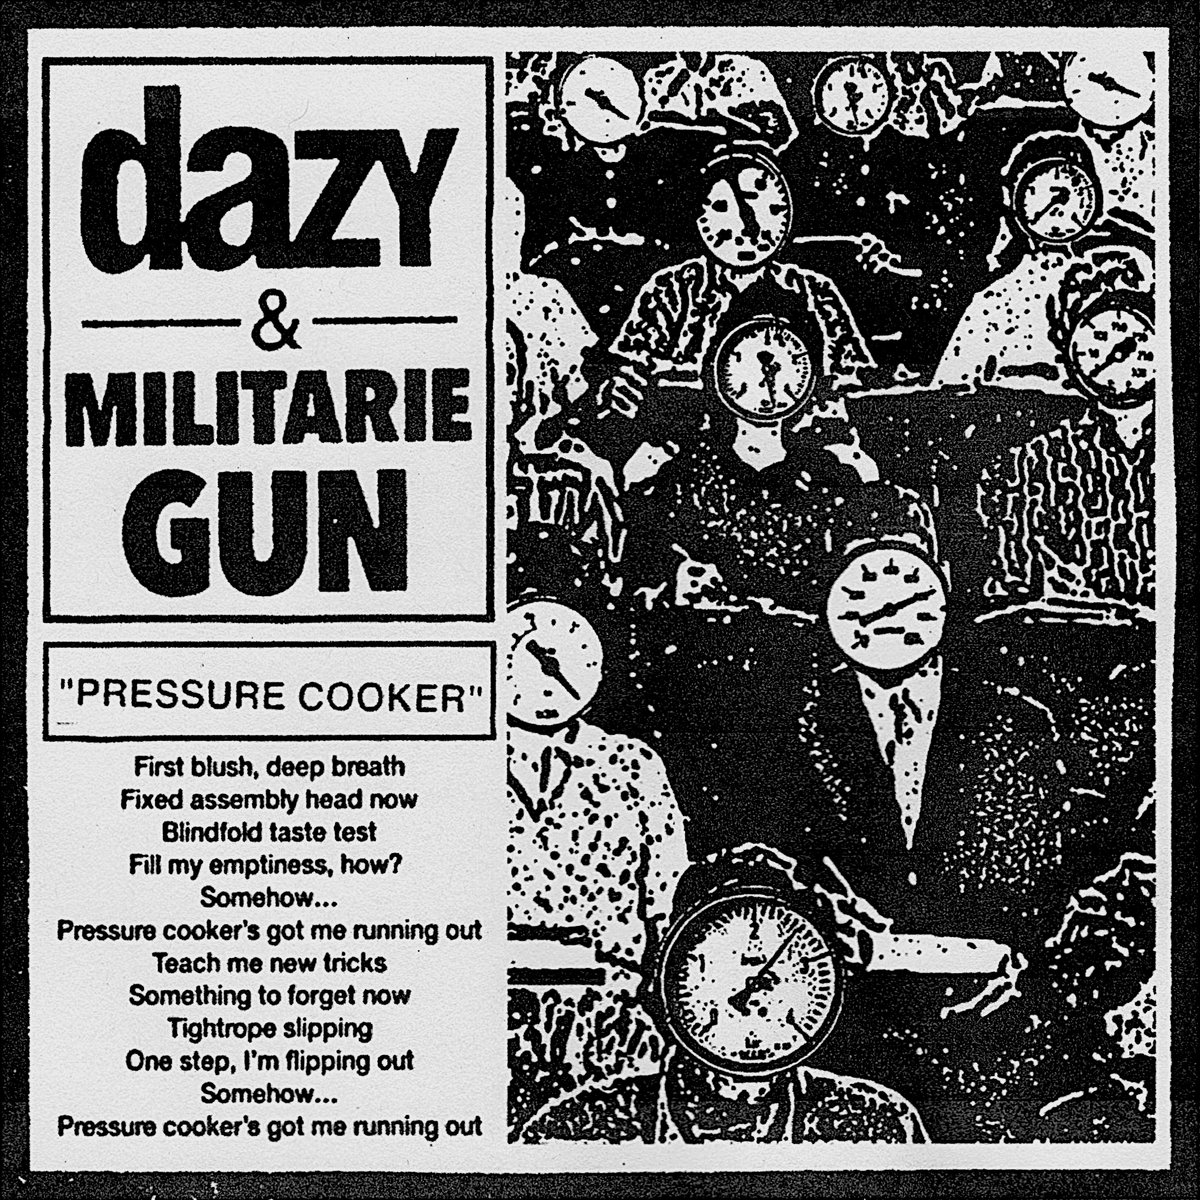 Dazy & Militarie Gun Pressure Cooker cover artwork